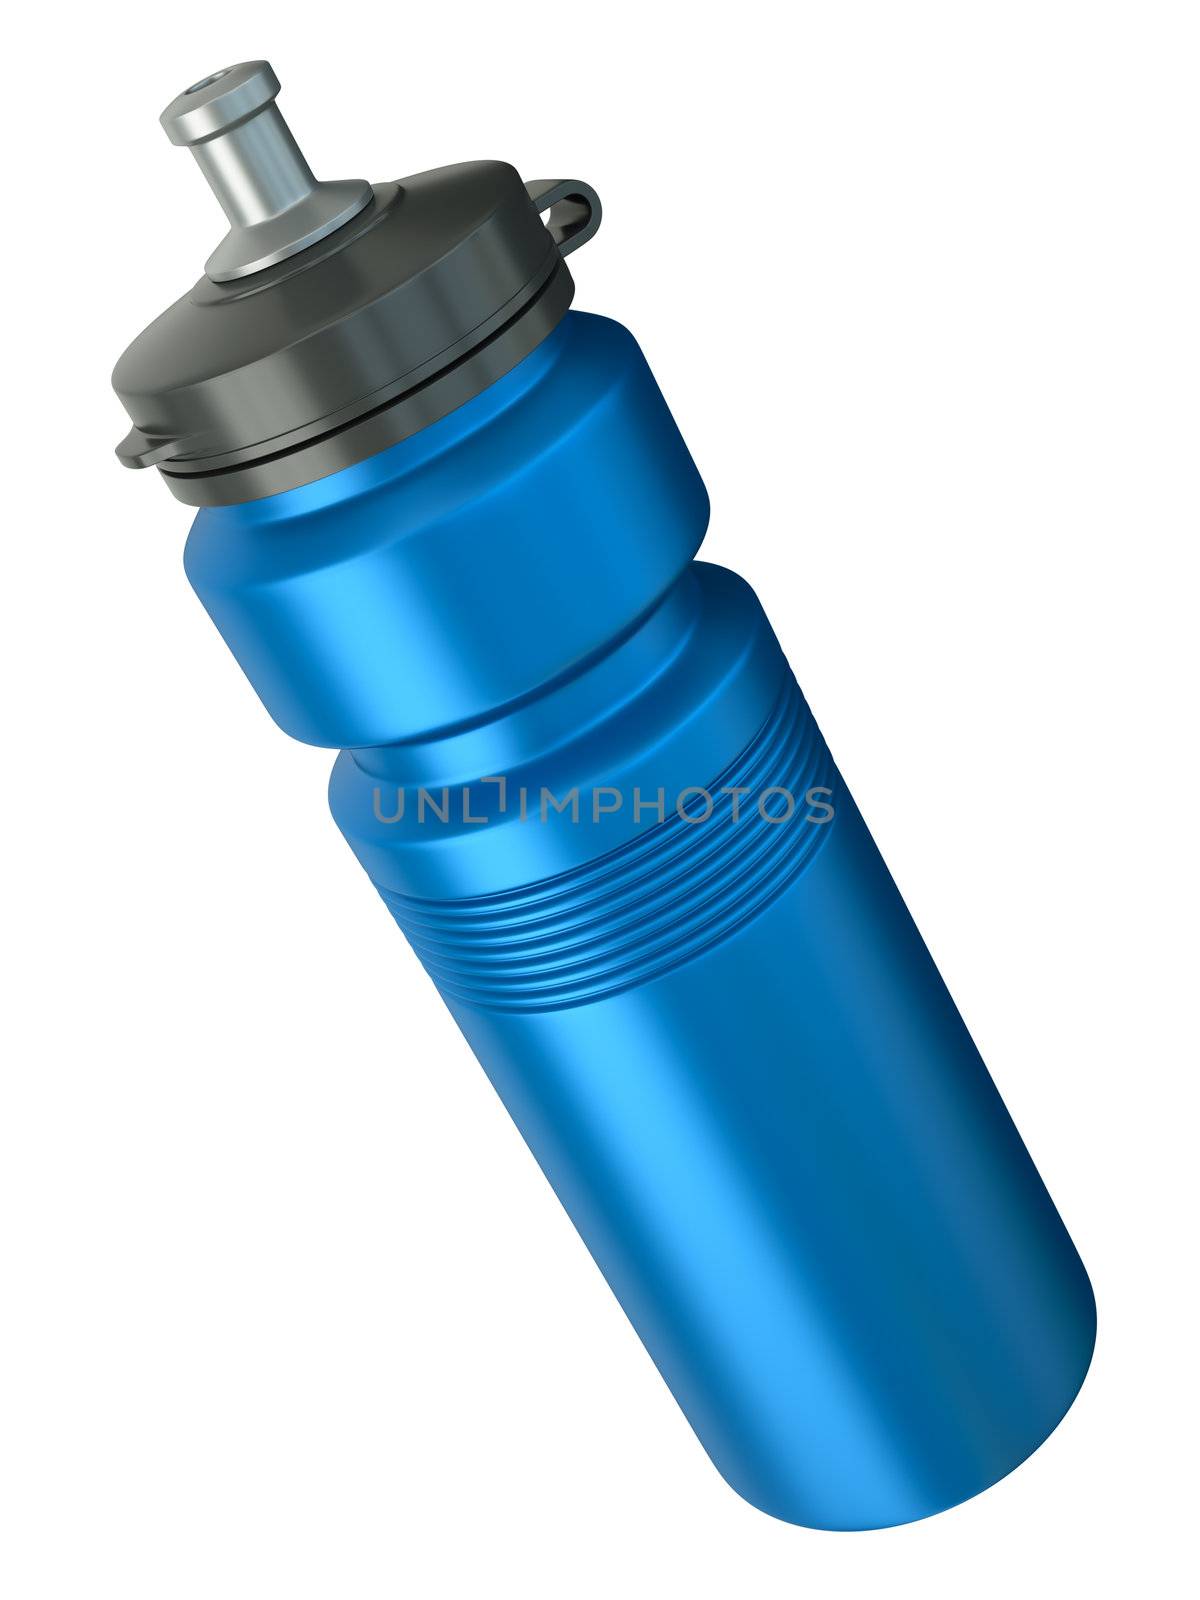 Blue sports water bottle. 3D render.